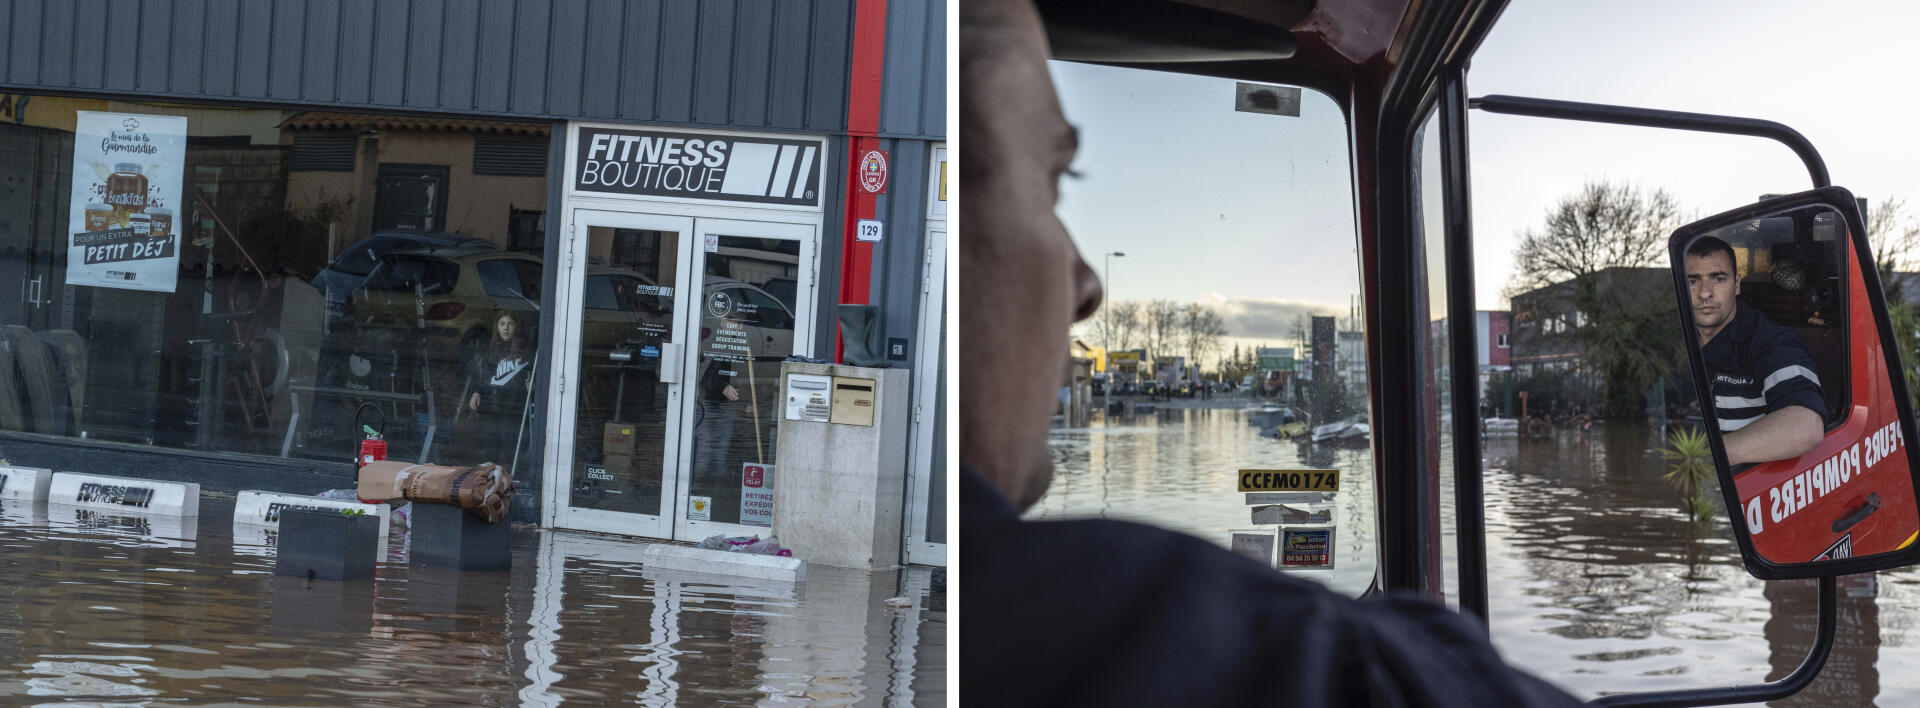 Le 2 décembre, dans la zone industrielle La Palud, à Frejus, de nombreuses entreprises sont sous l’eau.